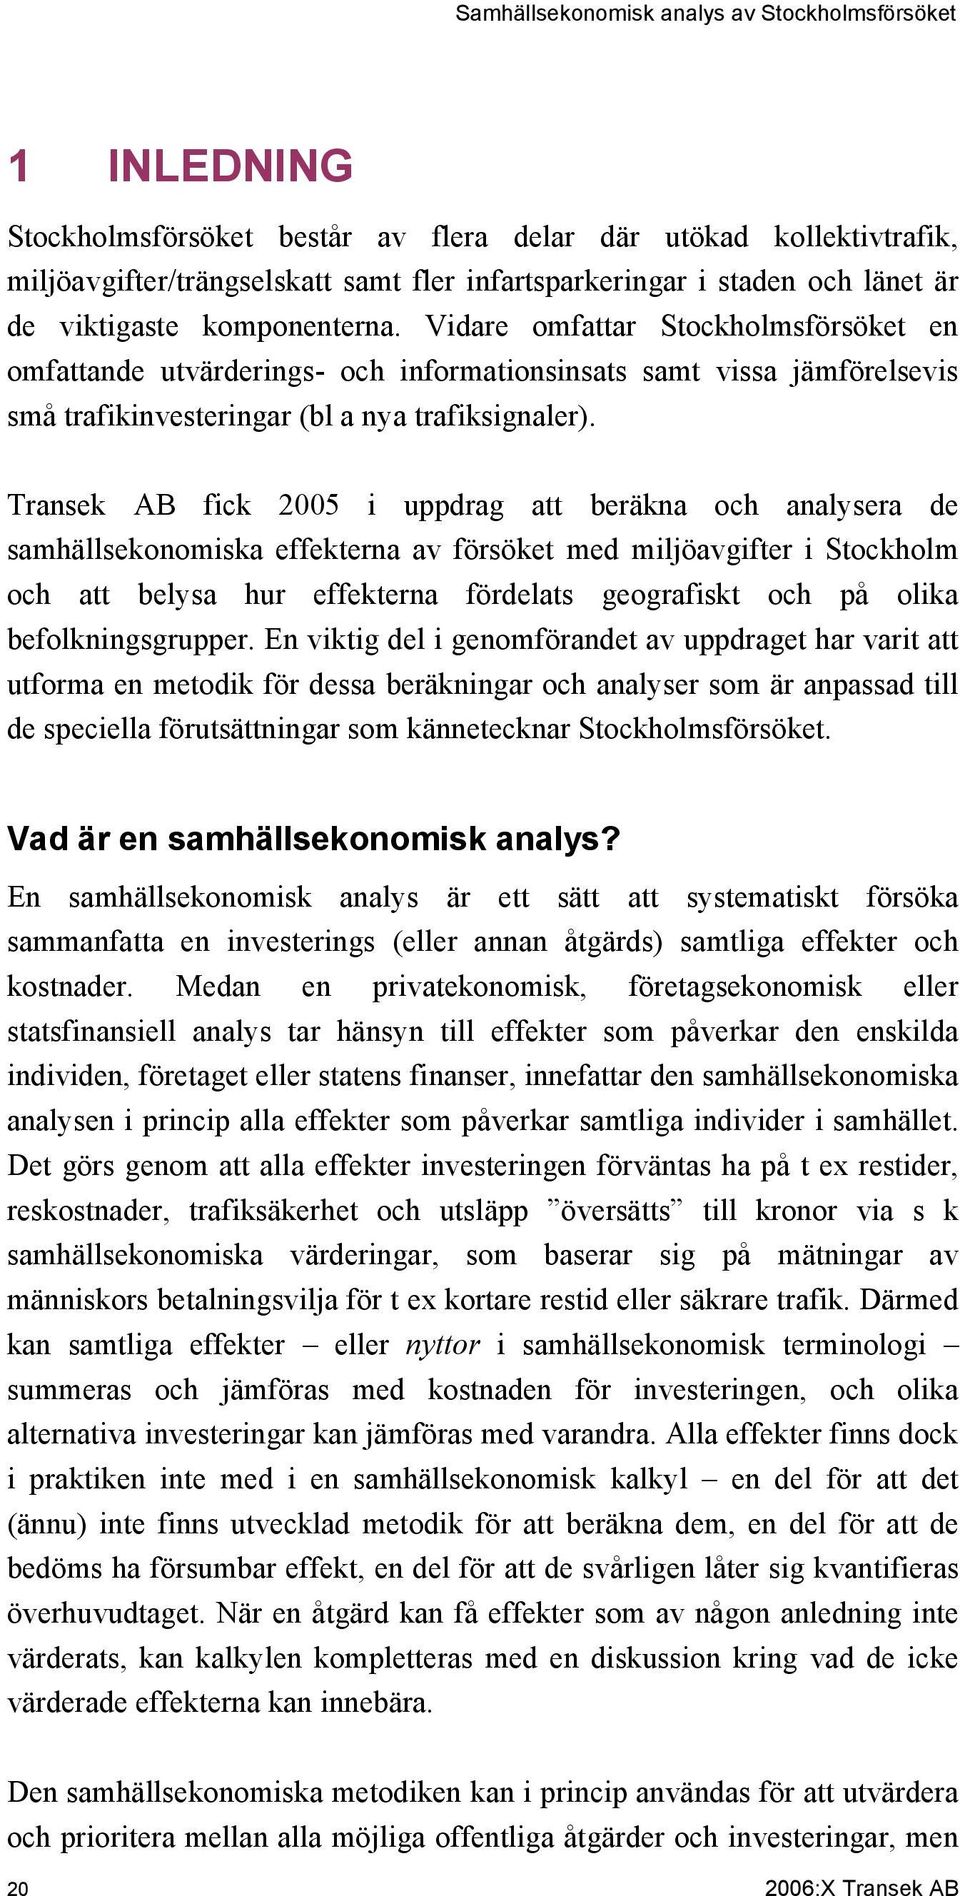 Transek AB fick 2005 i uppdrag att beräkna och analysera de samhällsekonomiska effekterna av försöket med miljöavgifter i Stockholm och att belysa hur effekterna fördelats geografiskt och på olika